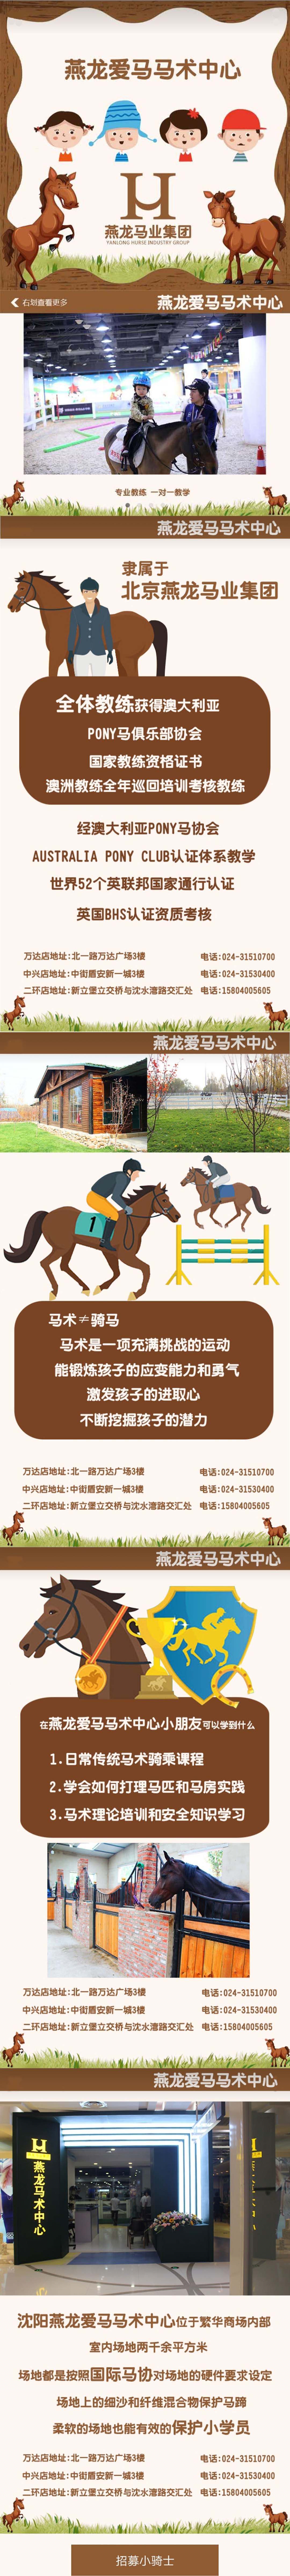 沈阳爱马马术中心企业宣传微信朋友圈H5广告图0